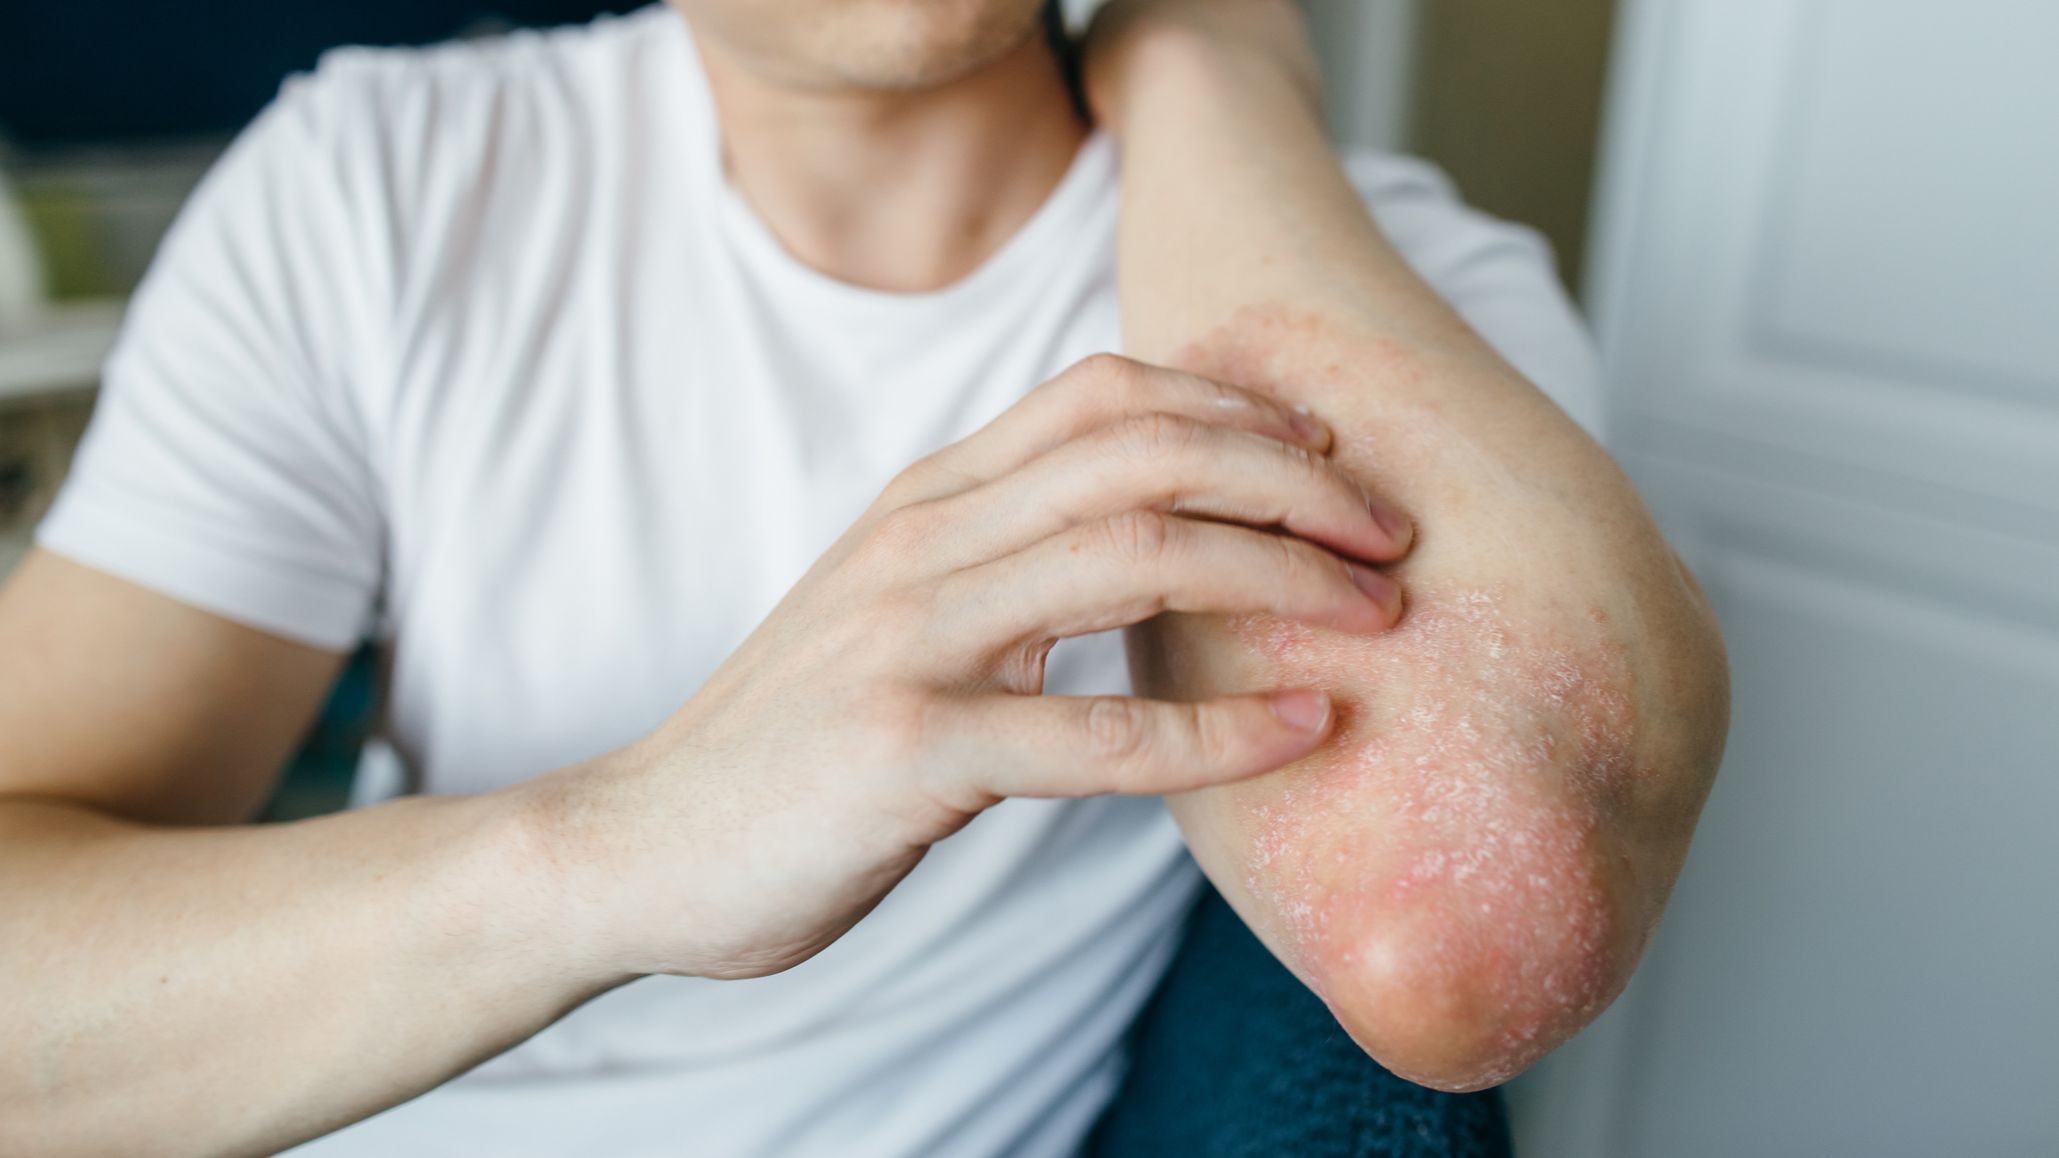 El 40% de los pacientes con Dermatitis Atópica necesitan atención psicológica debido a sus efectos